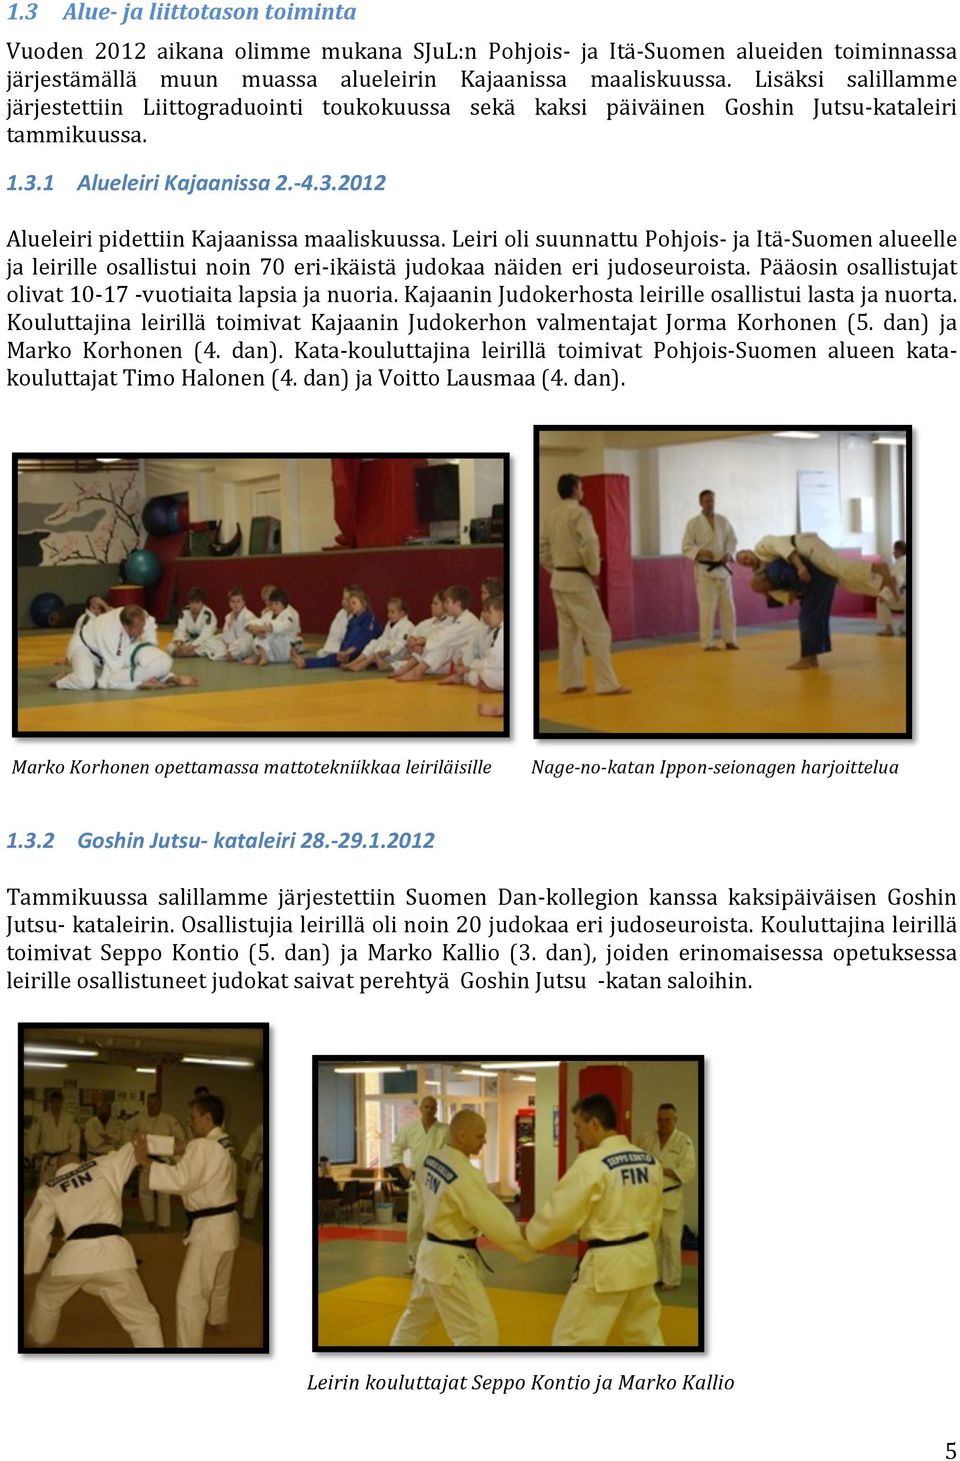 Leiri oli suunnattu Pohjois- ja Itä- Suomen alueelle ja leirille osallistui noin 70 eri- ikäistä judokaa näiden eri judoseuroista. Pääosin osallistujat olivat 10-17 - vuotiaita lapsia ja nuoria.